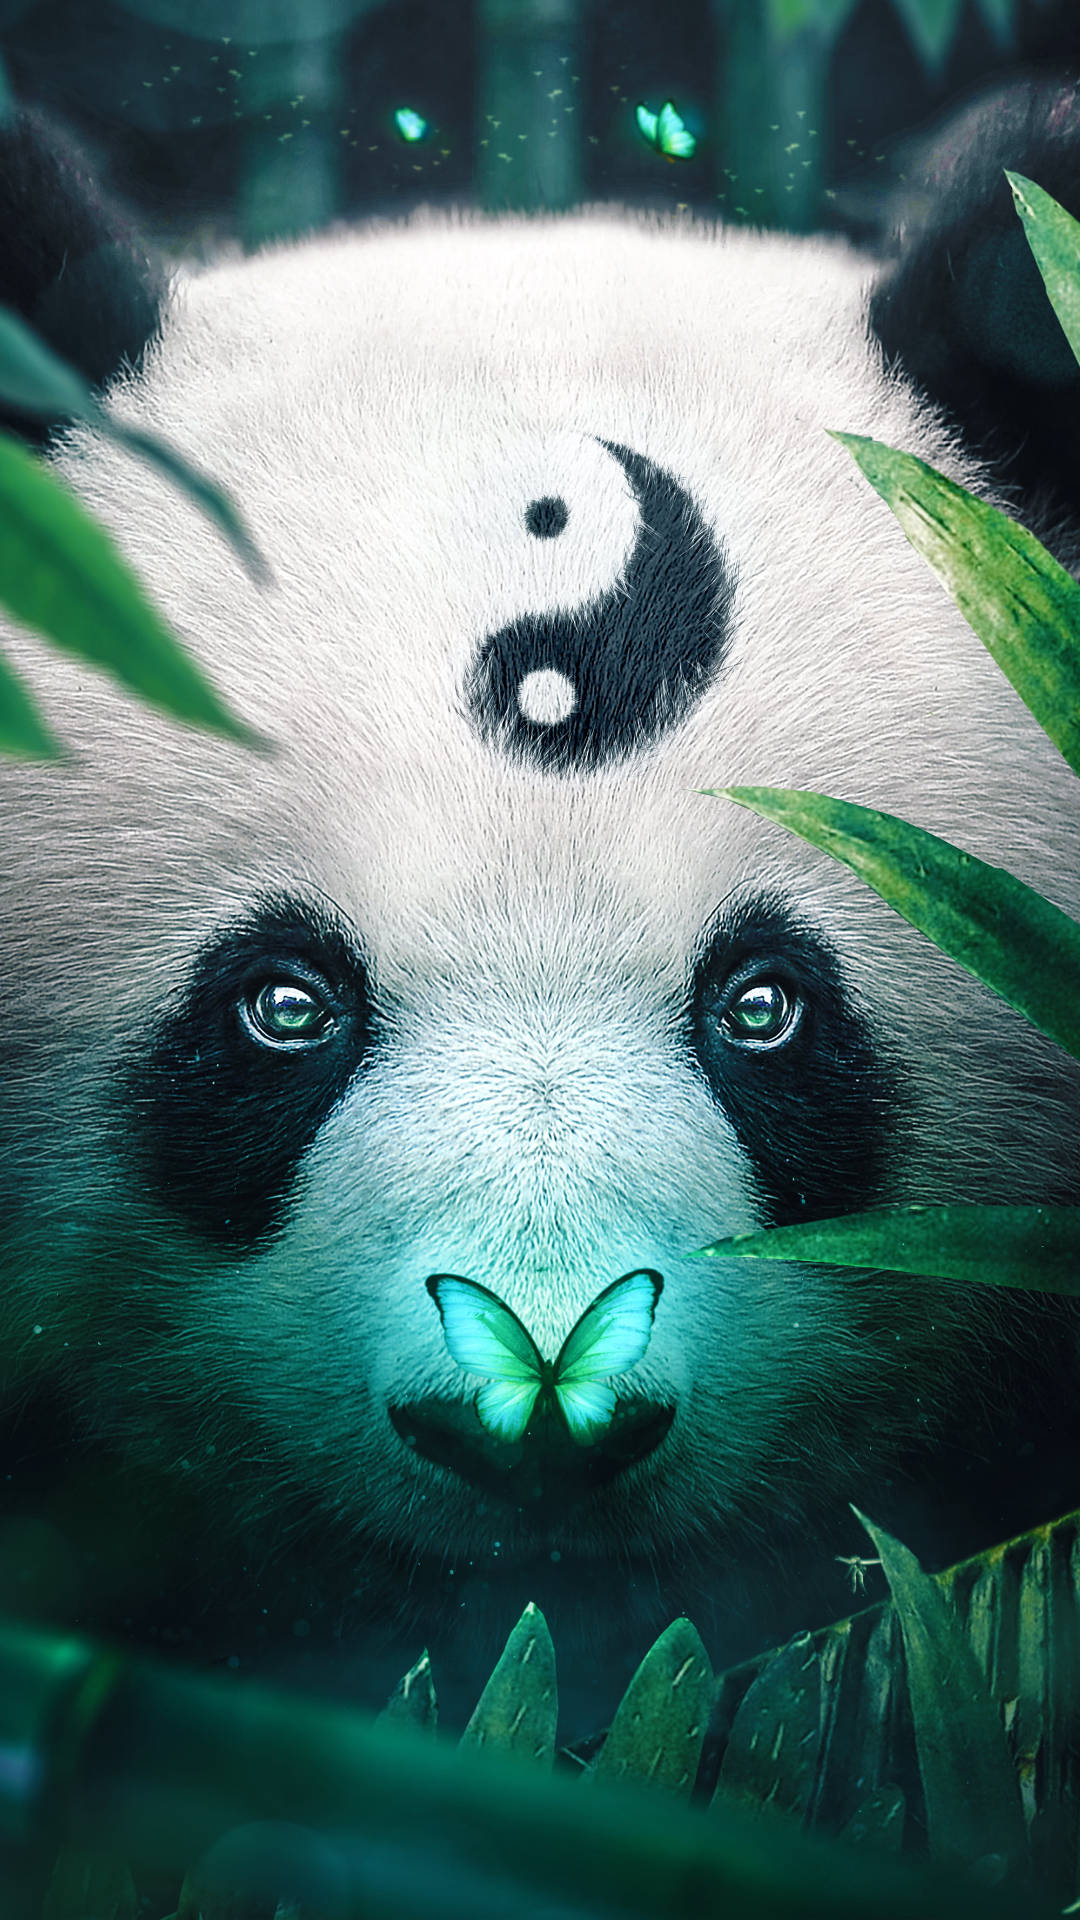 Panda Jungle Iphone Wallpaper